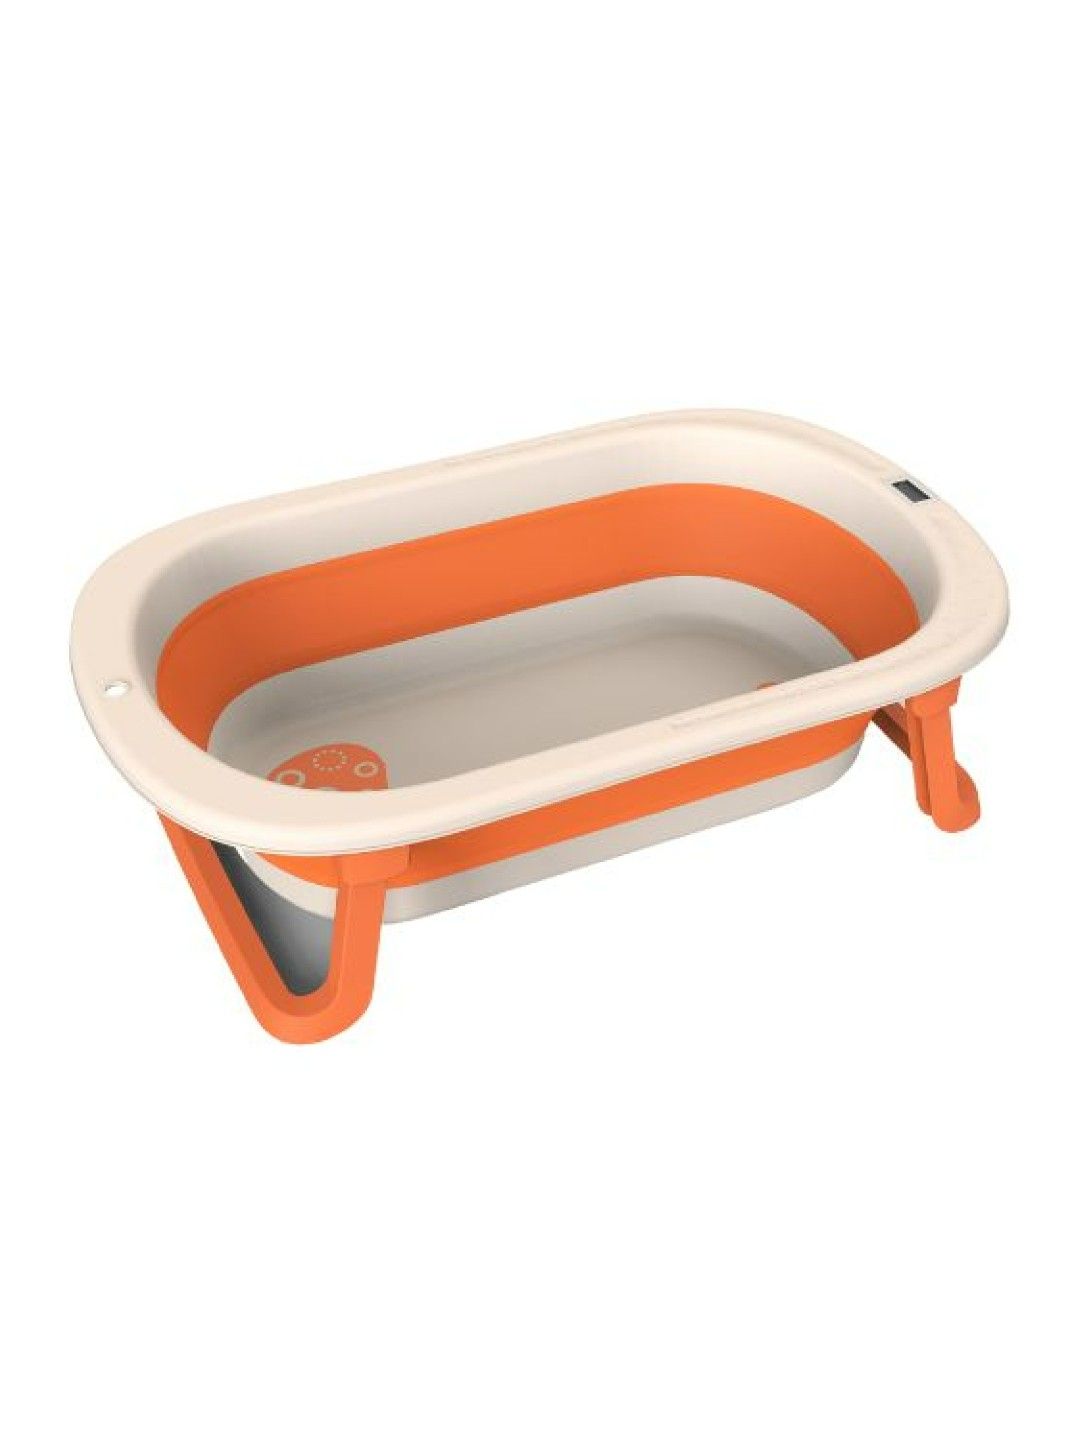 Yoboo Temperature Sensing Baby Bath (No Color- Image 1)